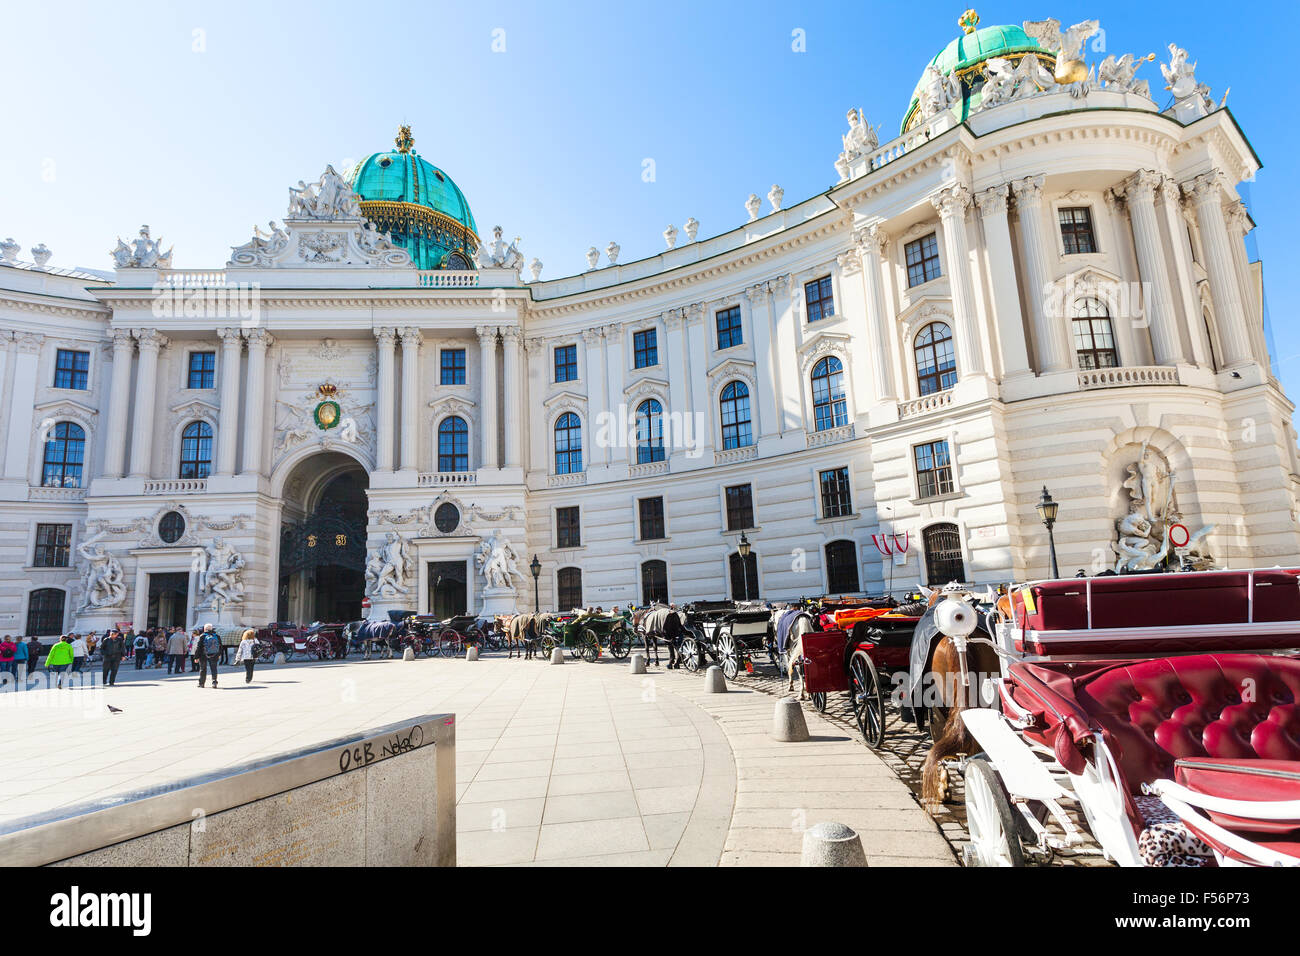 VIENNA, Austria - 1 ottobre 2015: persone e cabine sulla piazza Michaelerplatz del Palazzo di Hofburg. Michaelertrakt è stata completata in corrispondenza di e Foto Stock